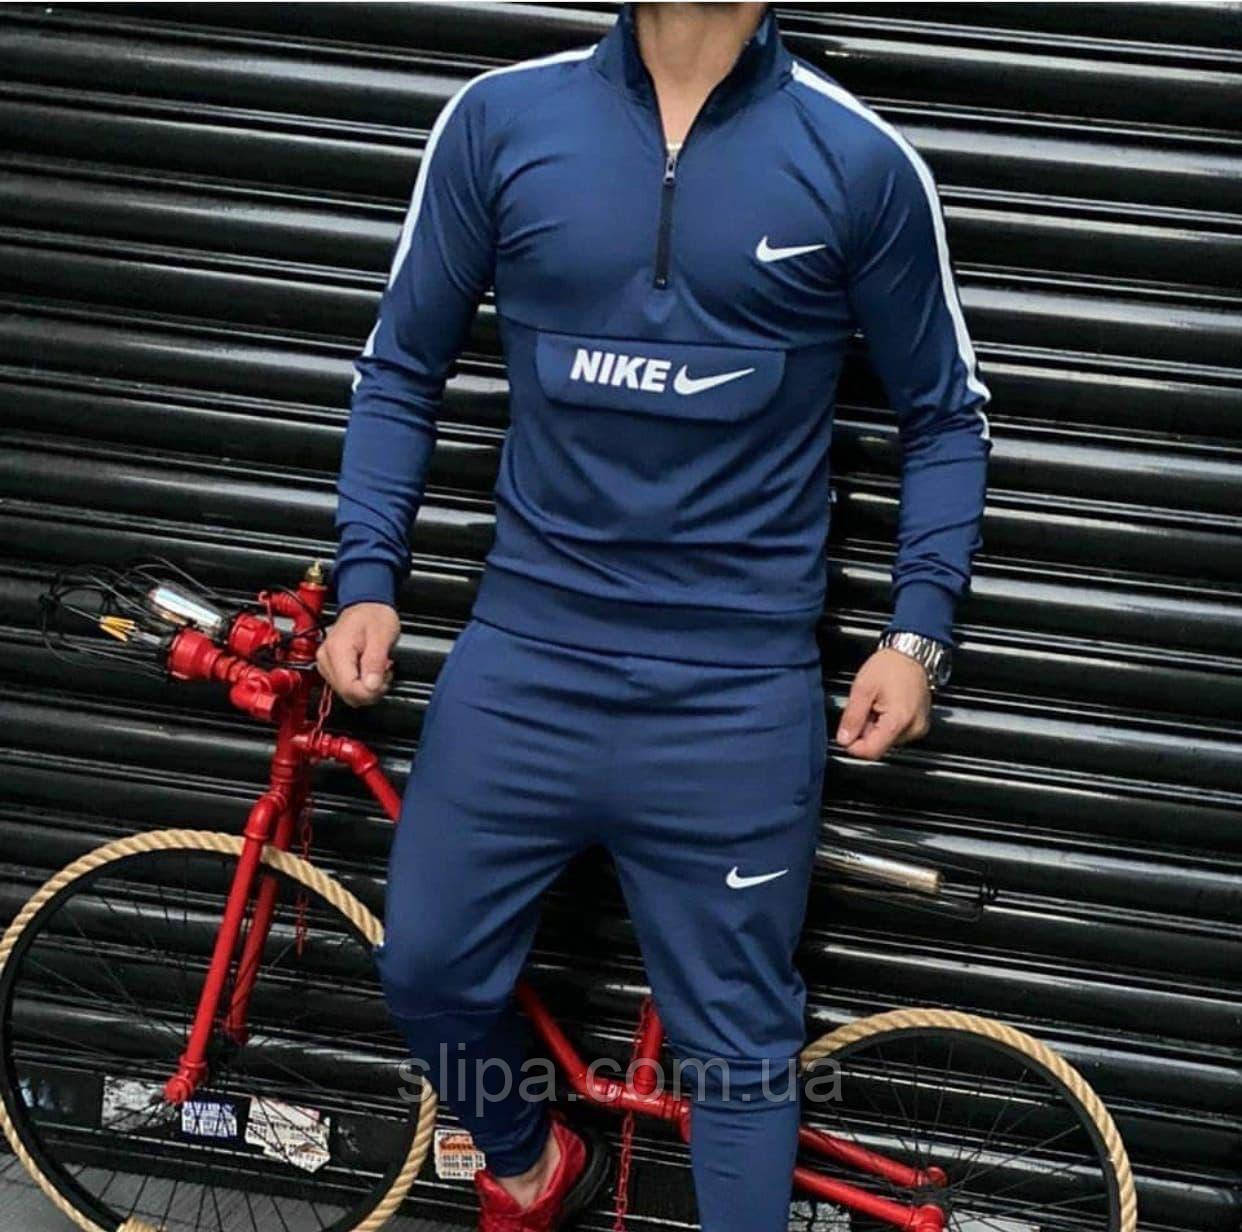 

Мужской спортивный костюм без капюшона в стиле Nike синий 48, Черный